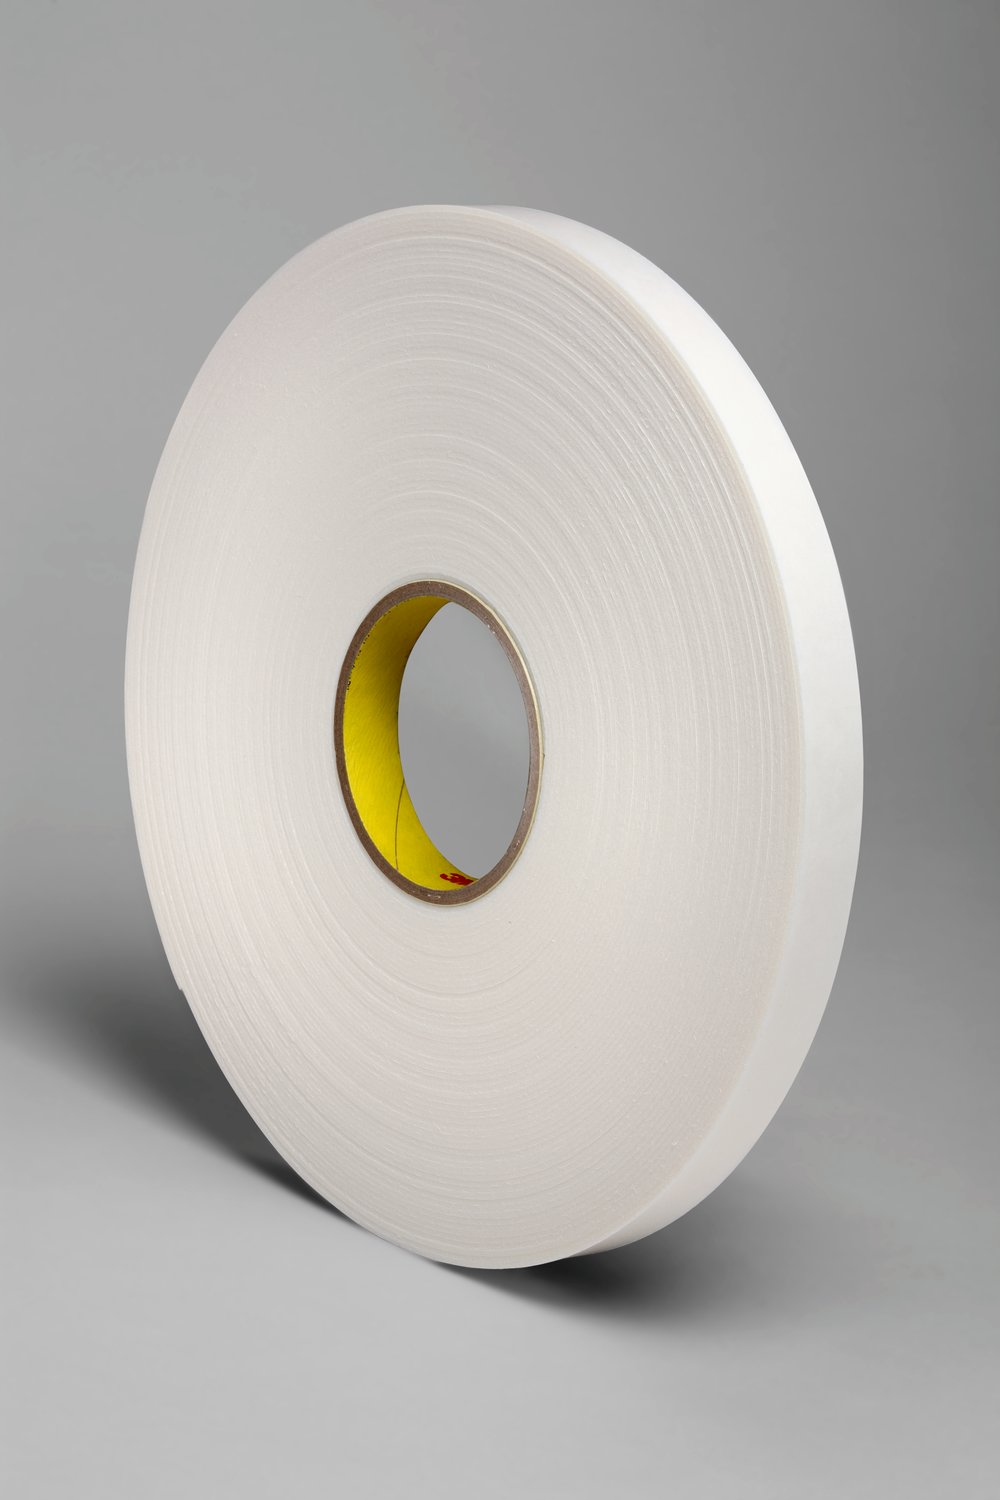 7000123594 - 3M Double Coated Polyethylene Foam Tape 4466, White, 3/4 in x 36 yd, 62
mil, 12 rolls per case